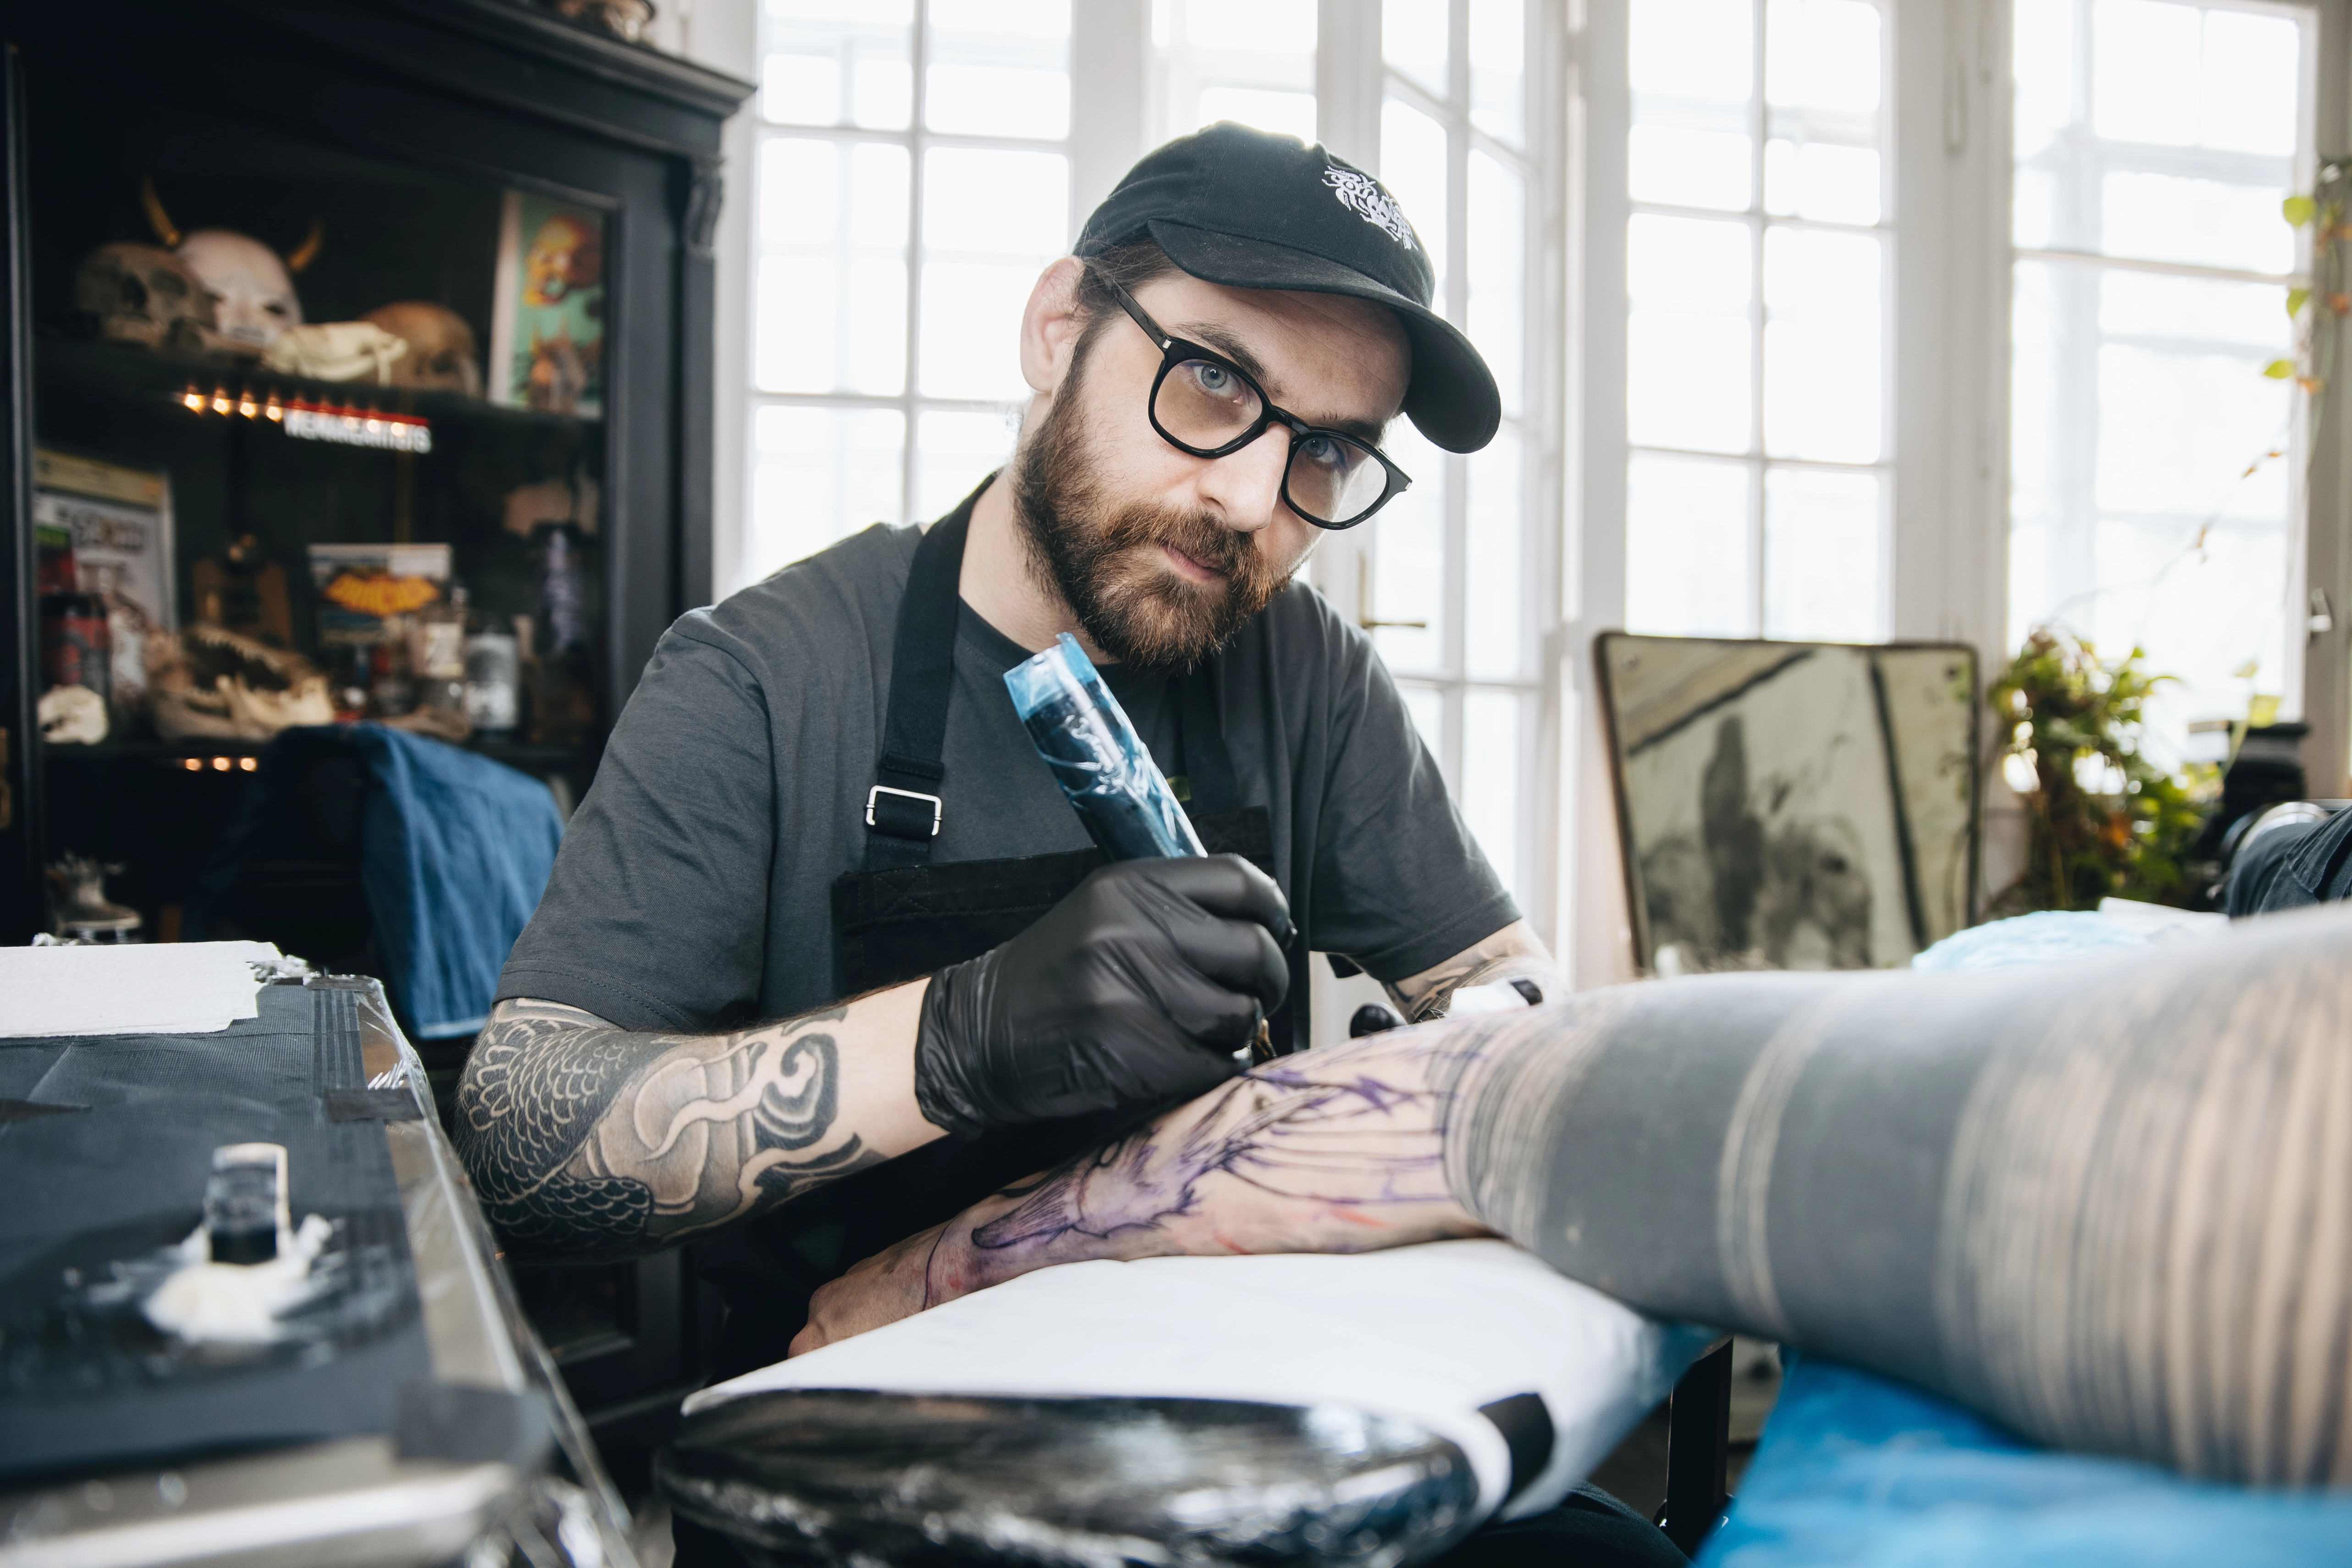 Borbás Róbert: Úgy nem lehet tetoválni, hogy valaki azt keresi, mi jön be az embereknek